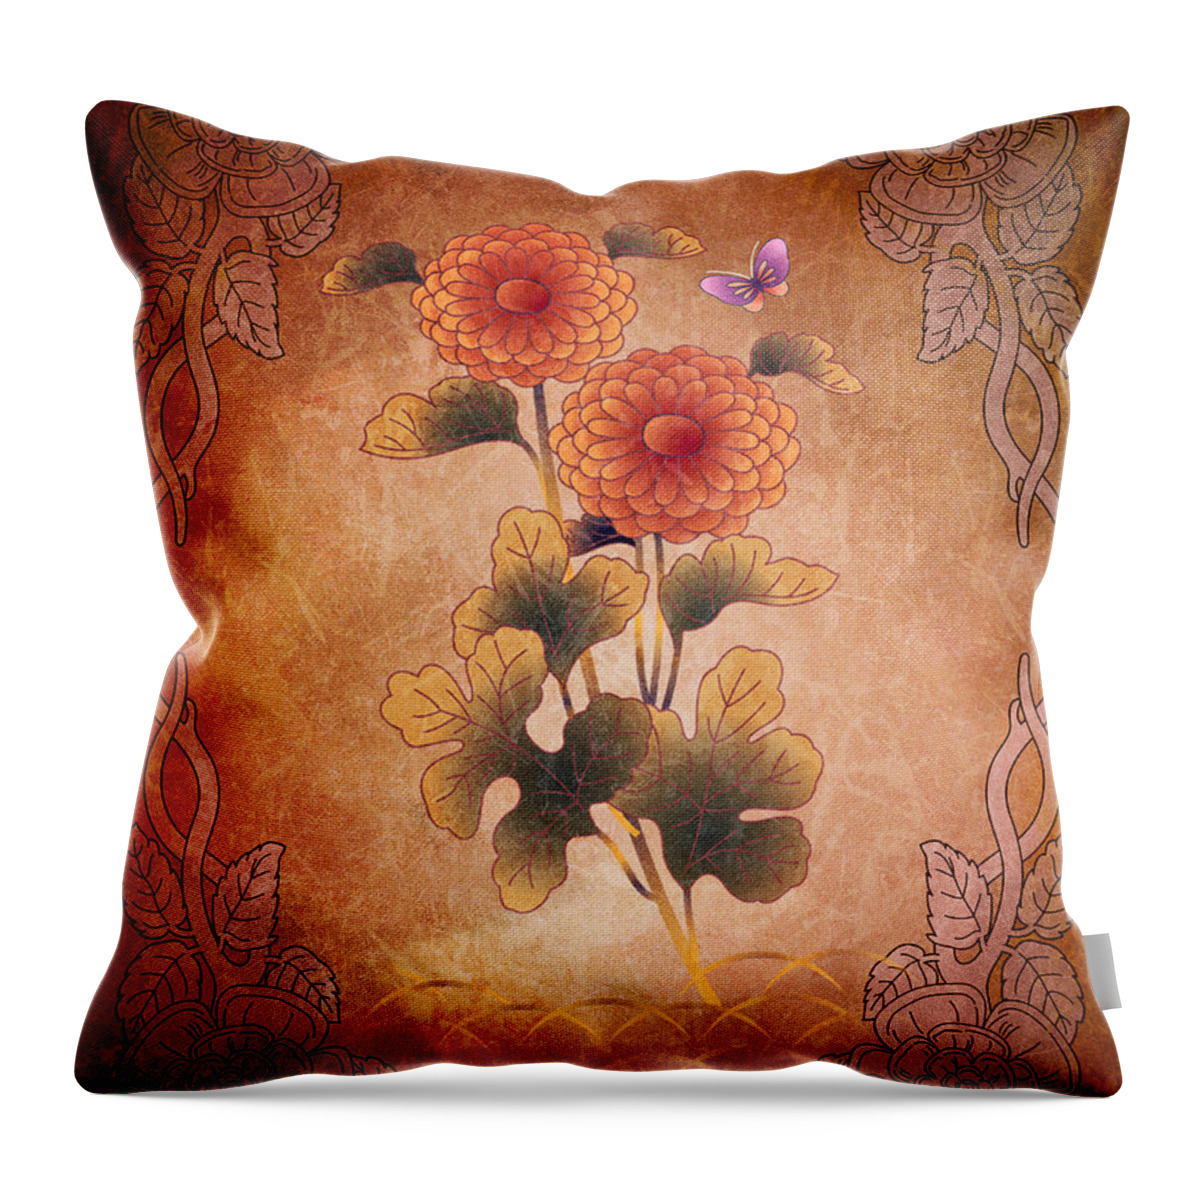 Autumn Throw Pillow featuring the digital art Autumn Blooming Mum by Peter Awax